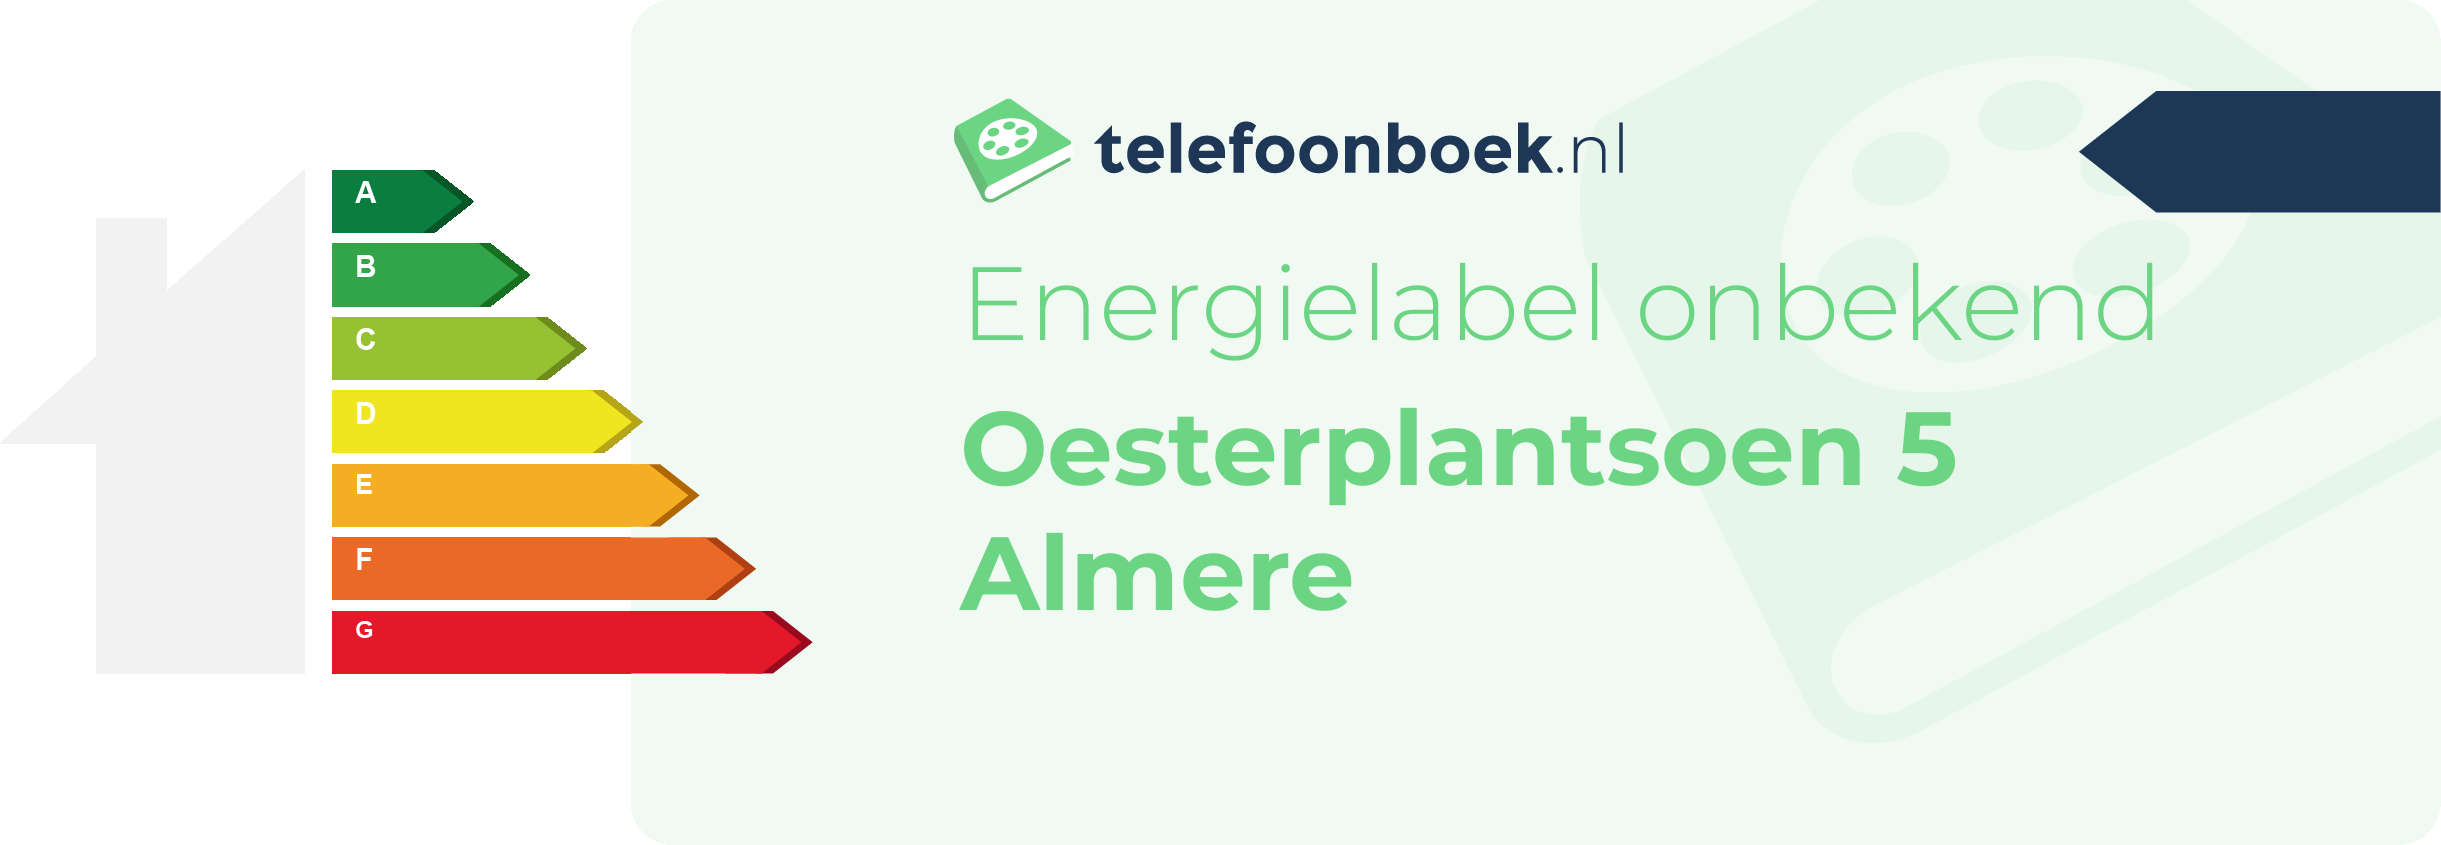 Energielabel Oesterplantsoen 5 Almere